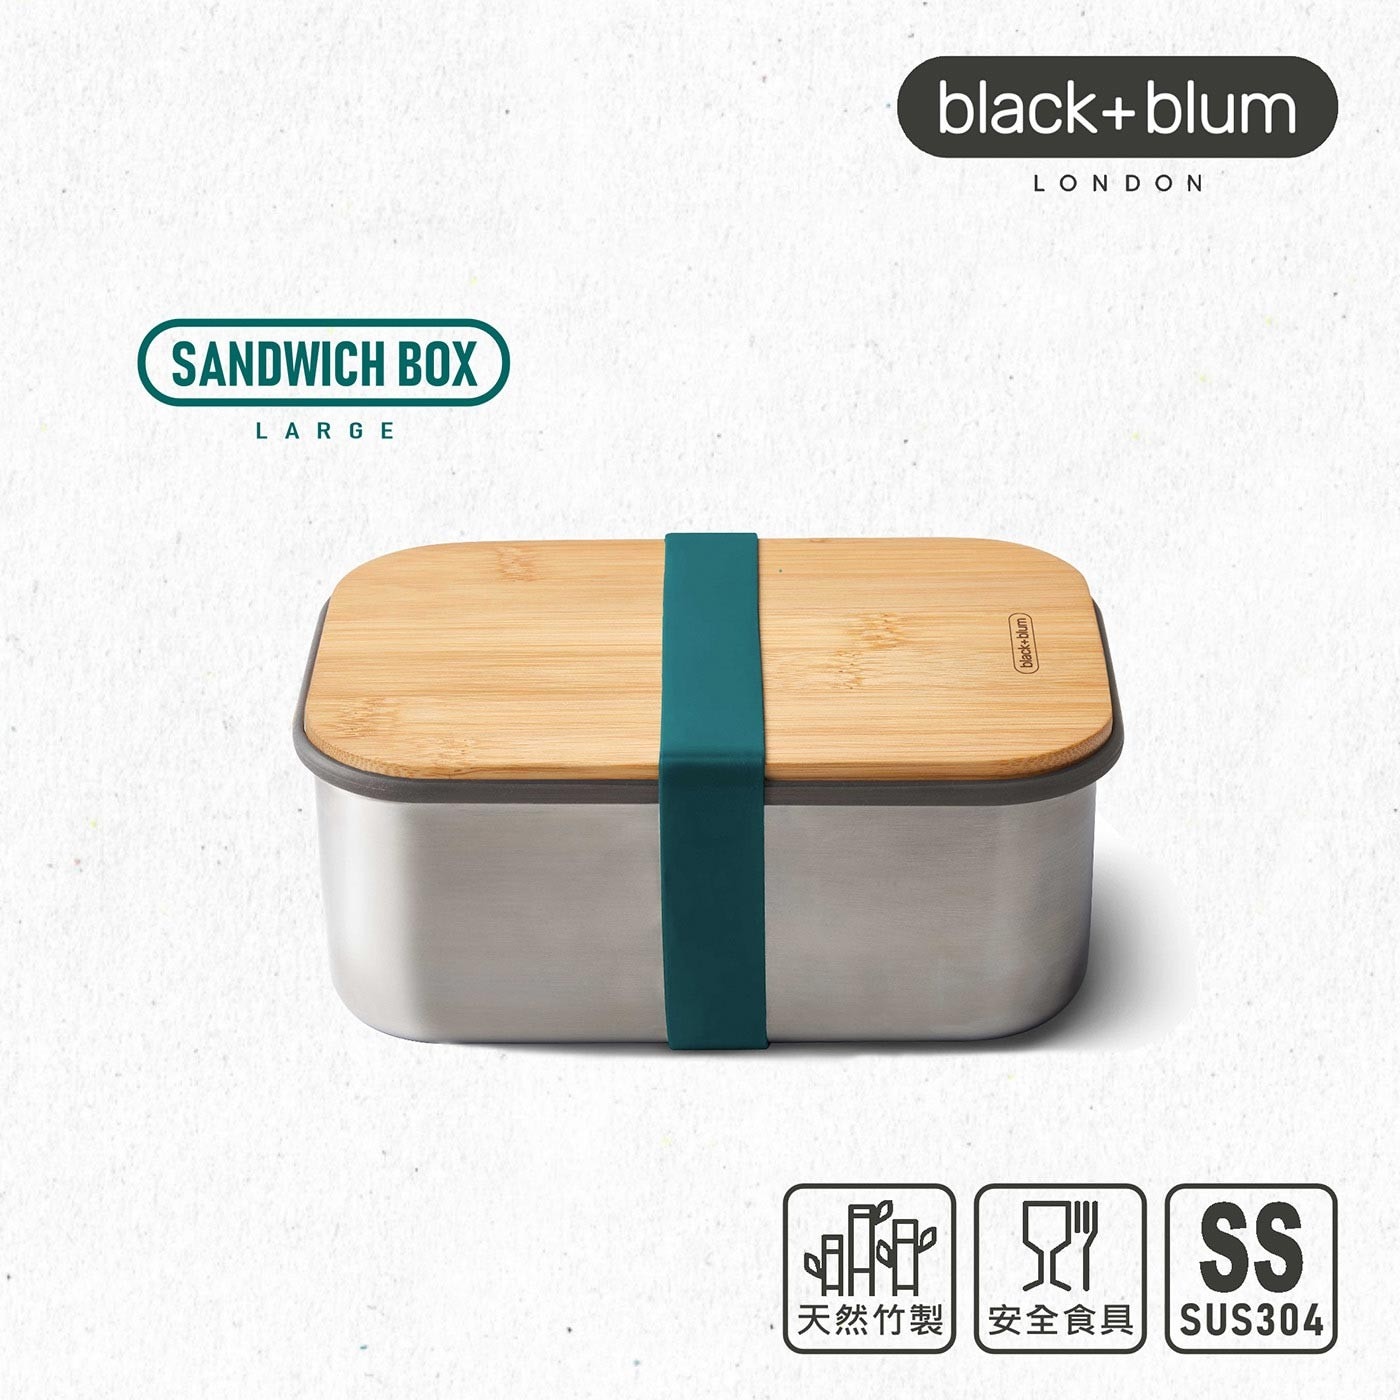 英國black+blum不鏽鋼輕食盒1250毫升含矽膠分隔-海水藍，304不鏽鋼盒身、耐熱矽膠束帶邊條，高品質天然竹製上蓋，耐切割，能作為托盤使用，矽膠耐熱好清洗。